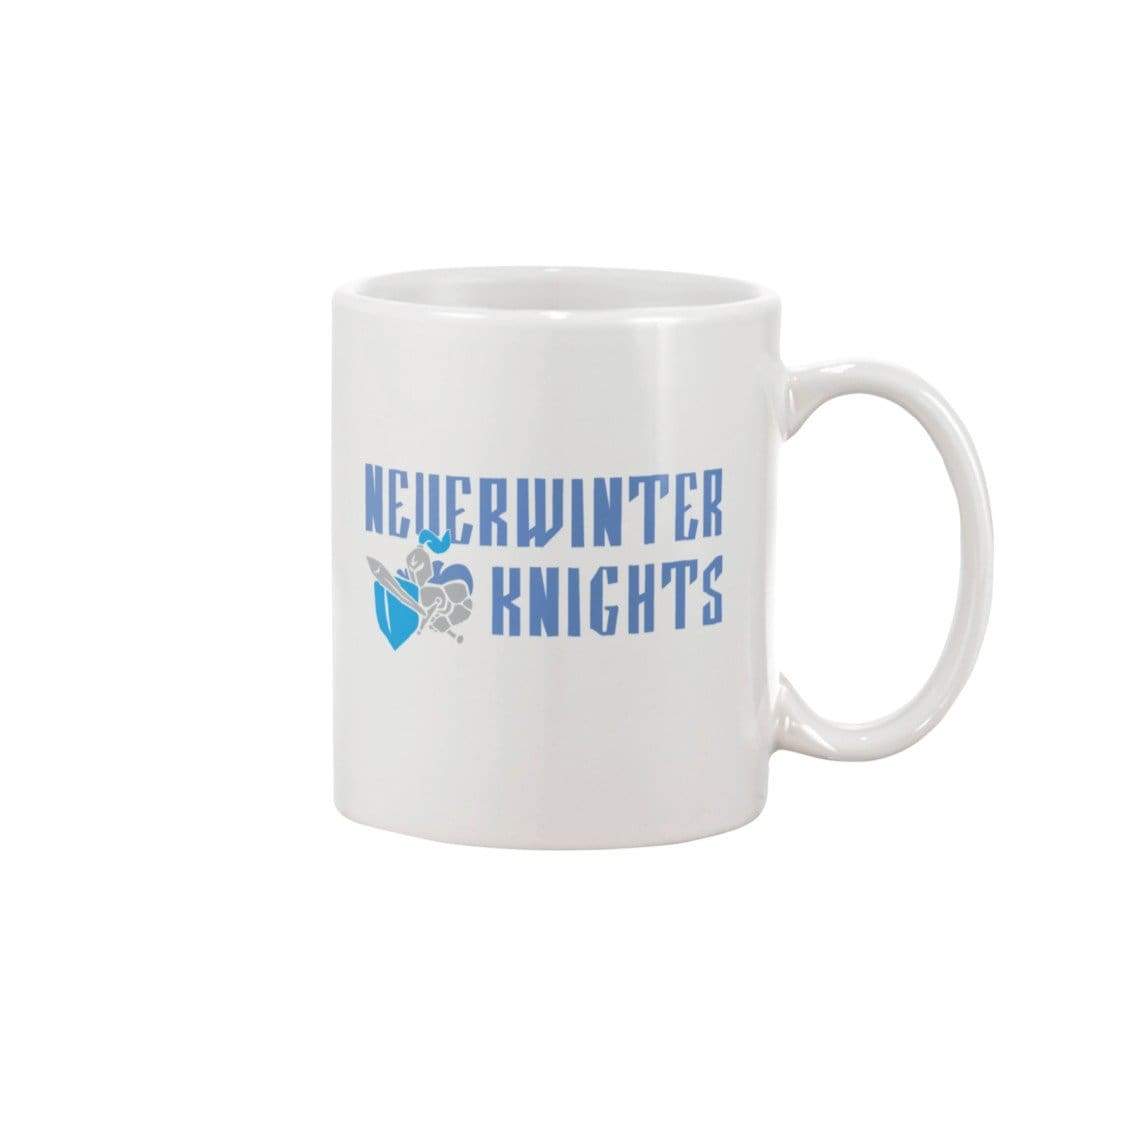 Neverwinter Knights V1 15oz Coffee Mug - White / 15OZ - Mugs